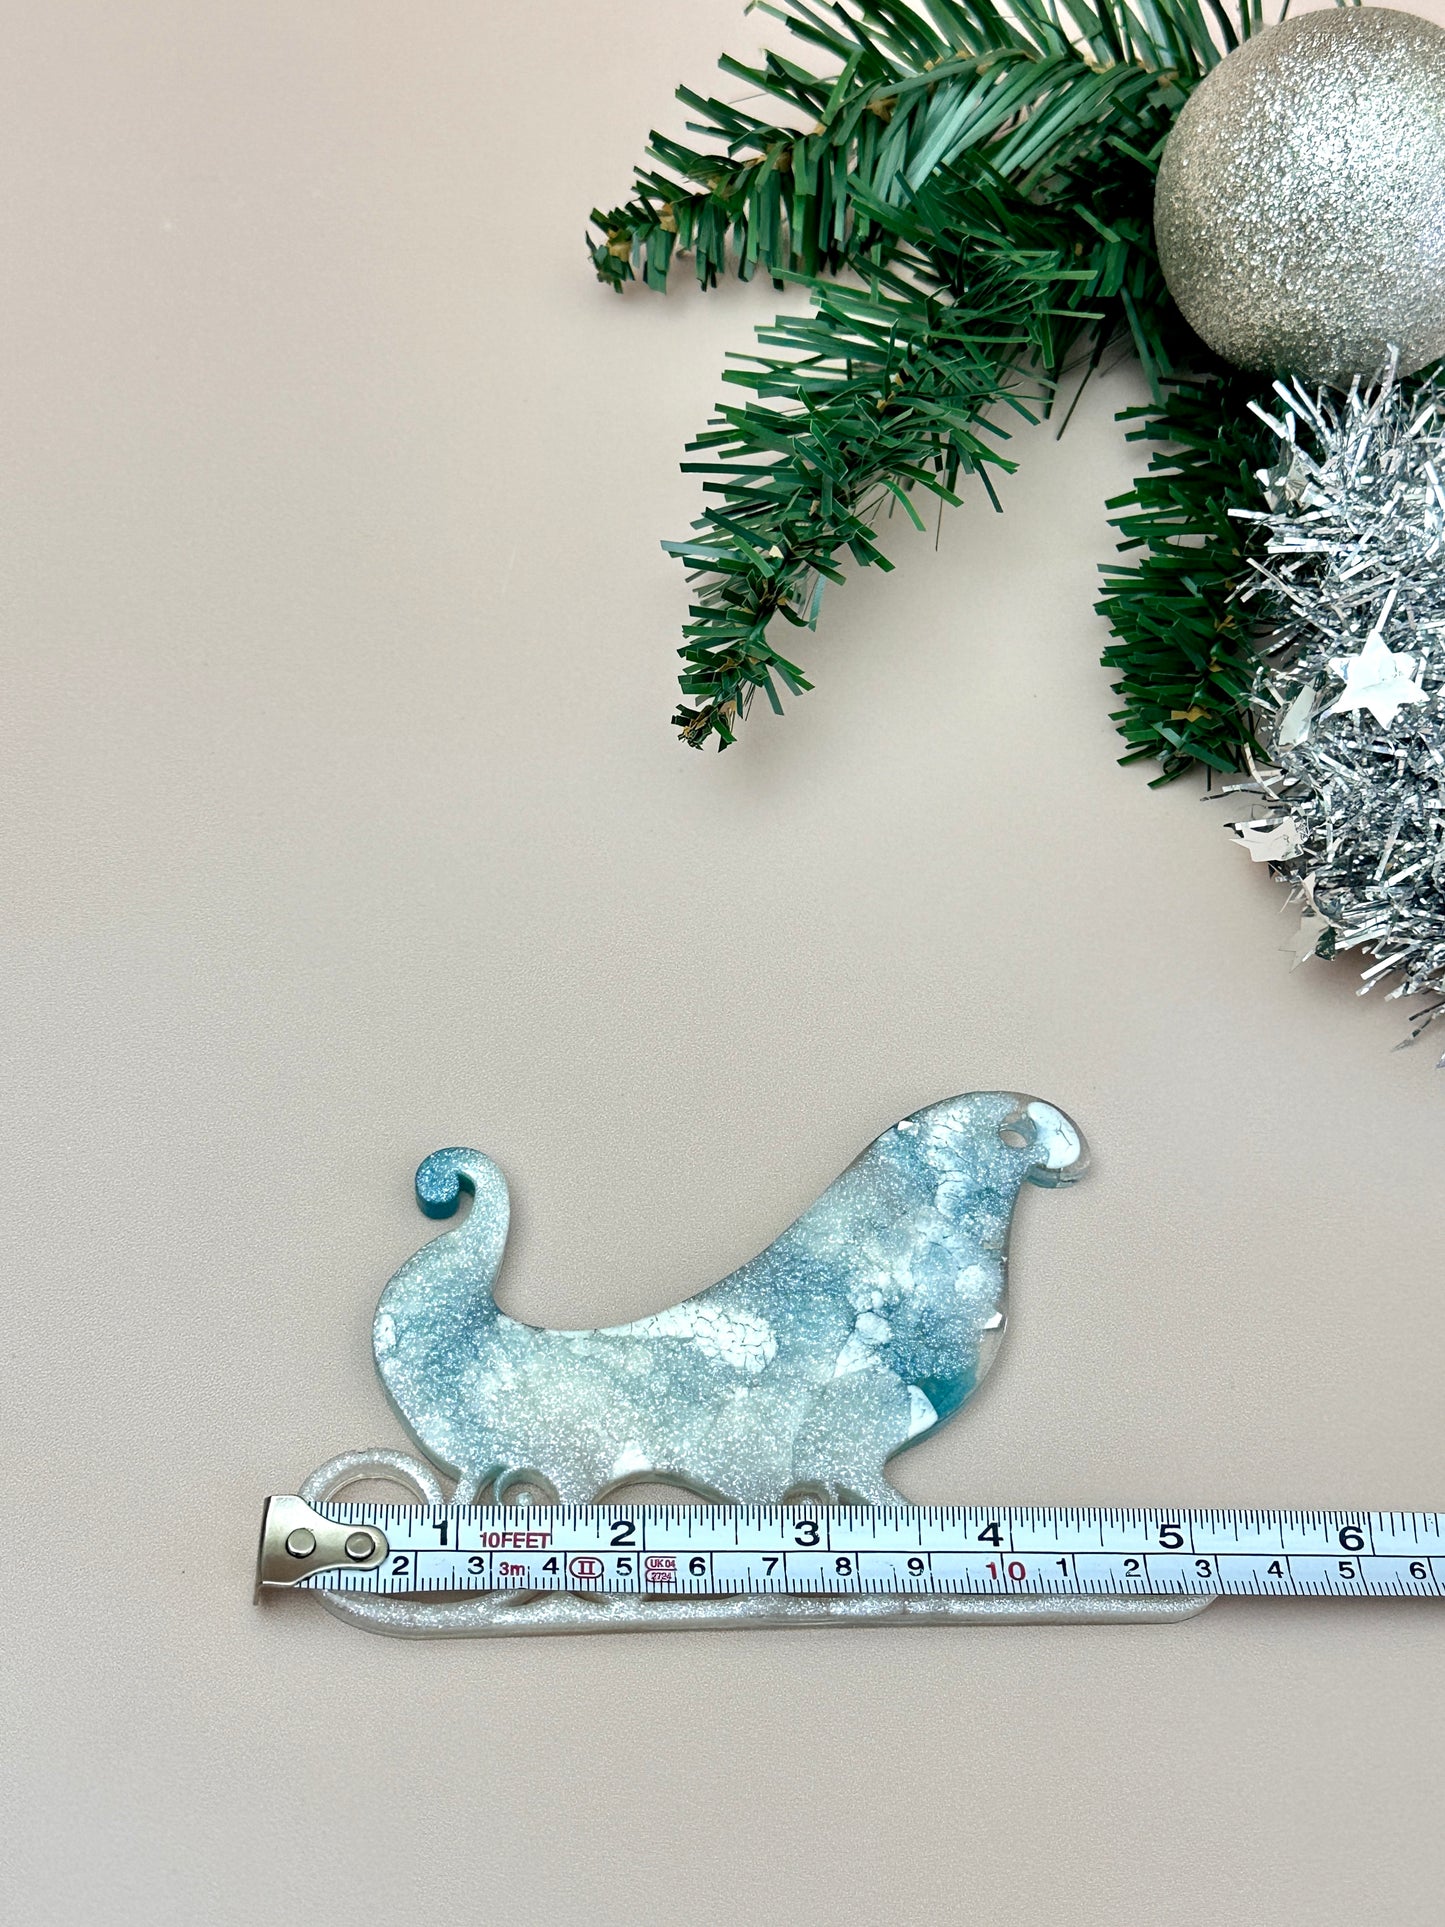 Weihnachts-Schlittenbaum-Spielzeug: Große Silikonform für Kunstharz-Kunsthandwerk, DIY-Dekoration und Geschenke